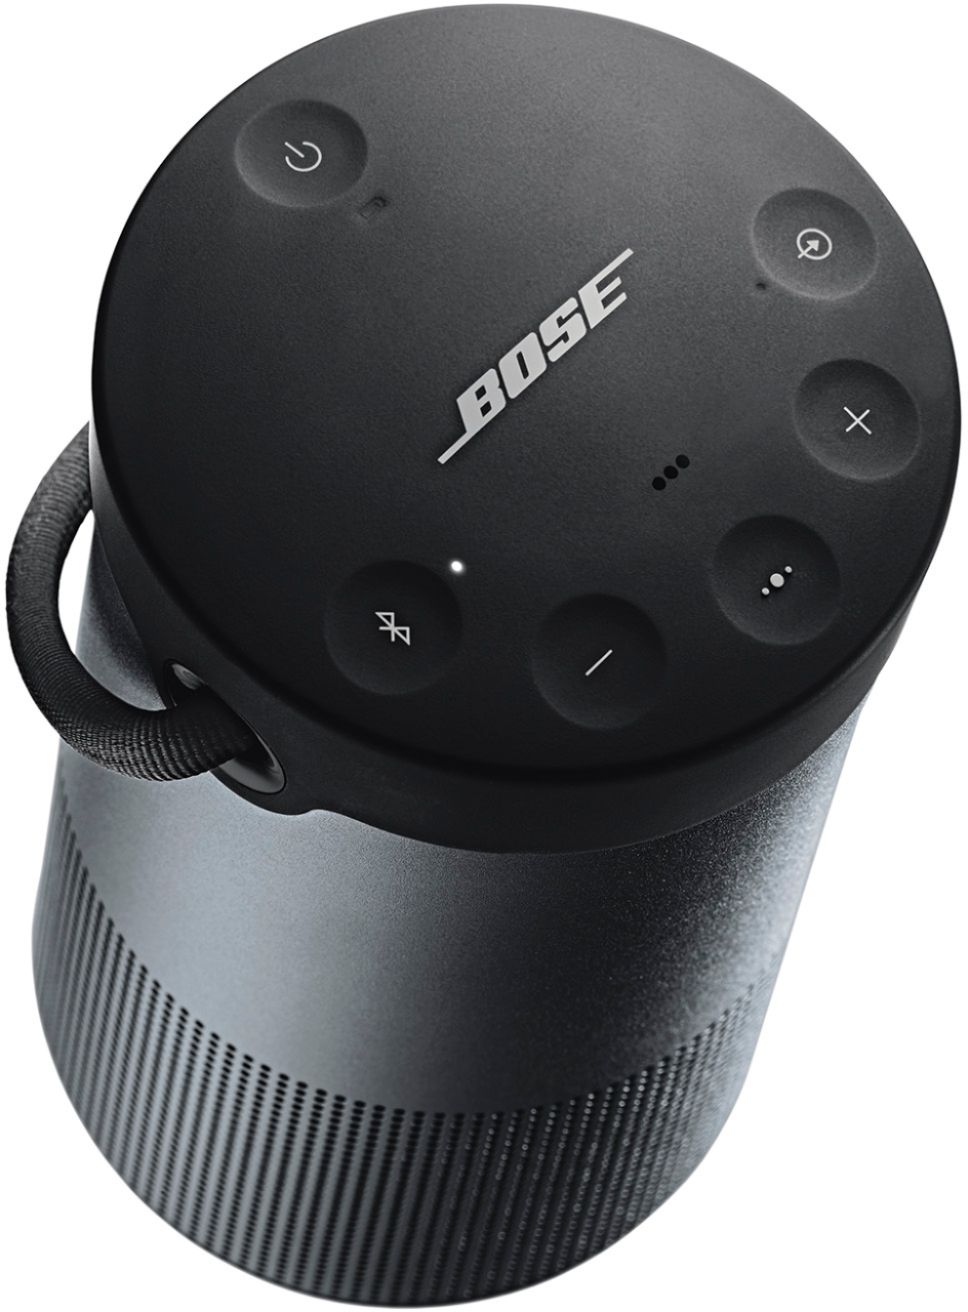 Best Buy: Bose SoundLink Revolve+ Portable Bluetooth speaker